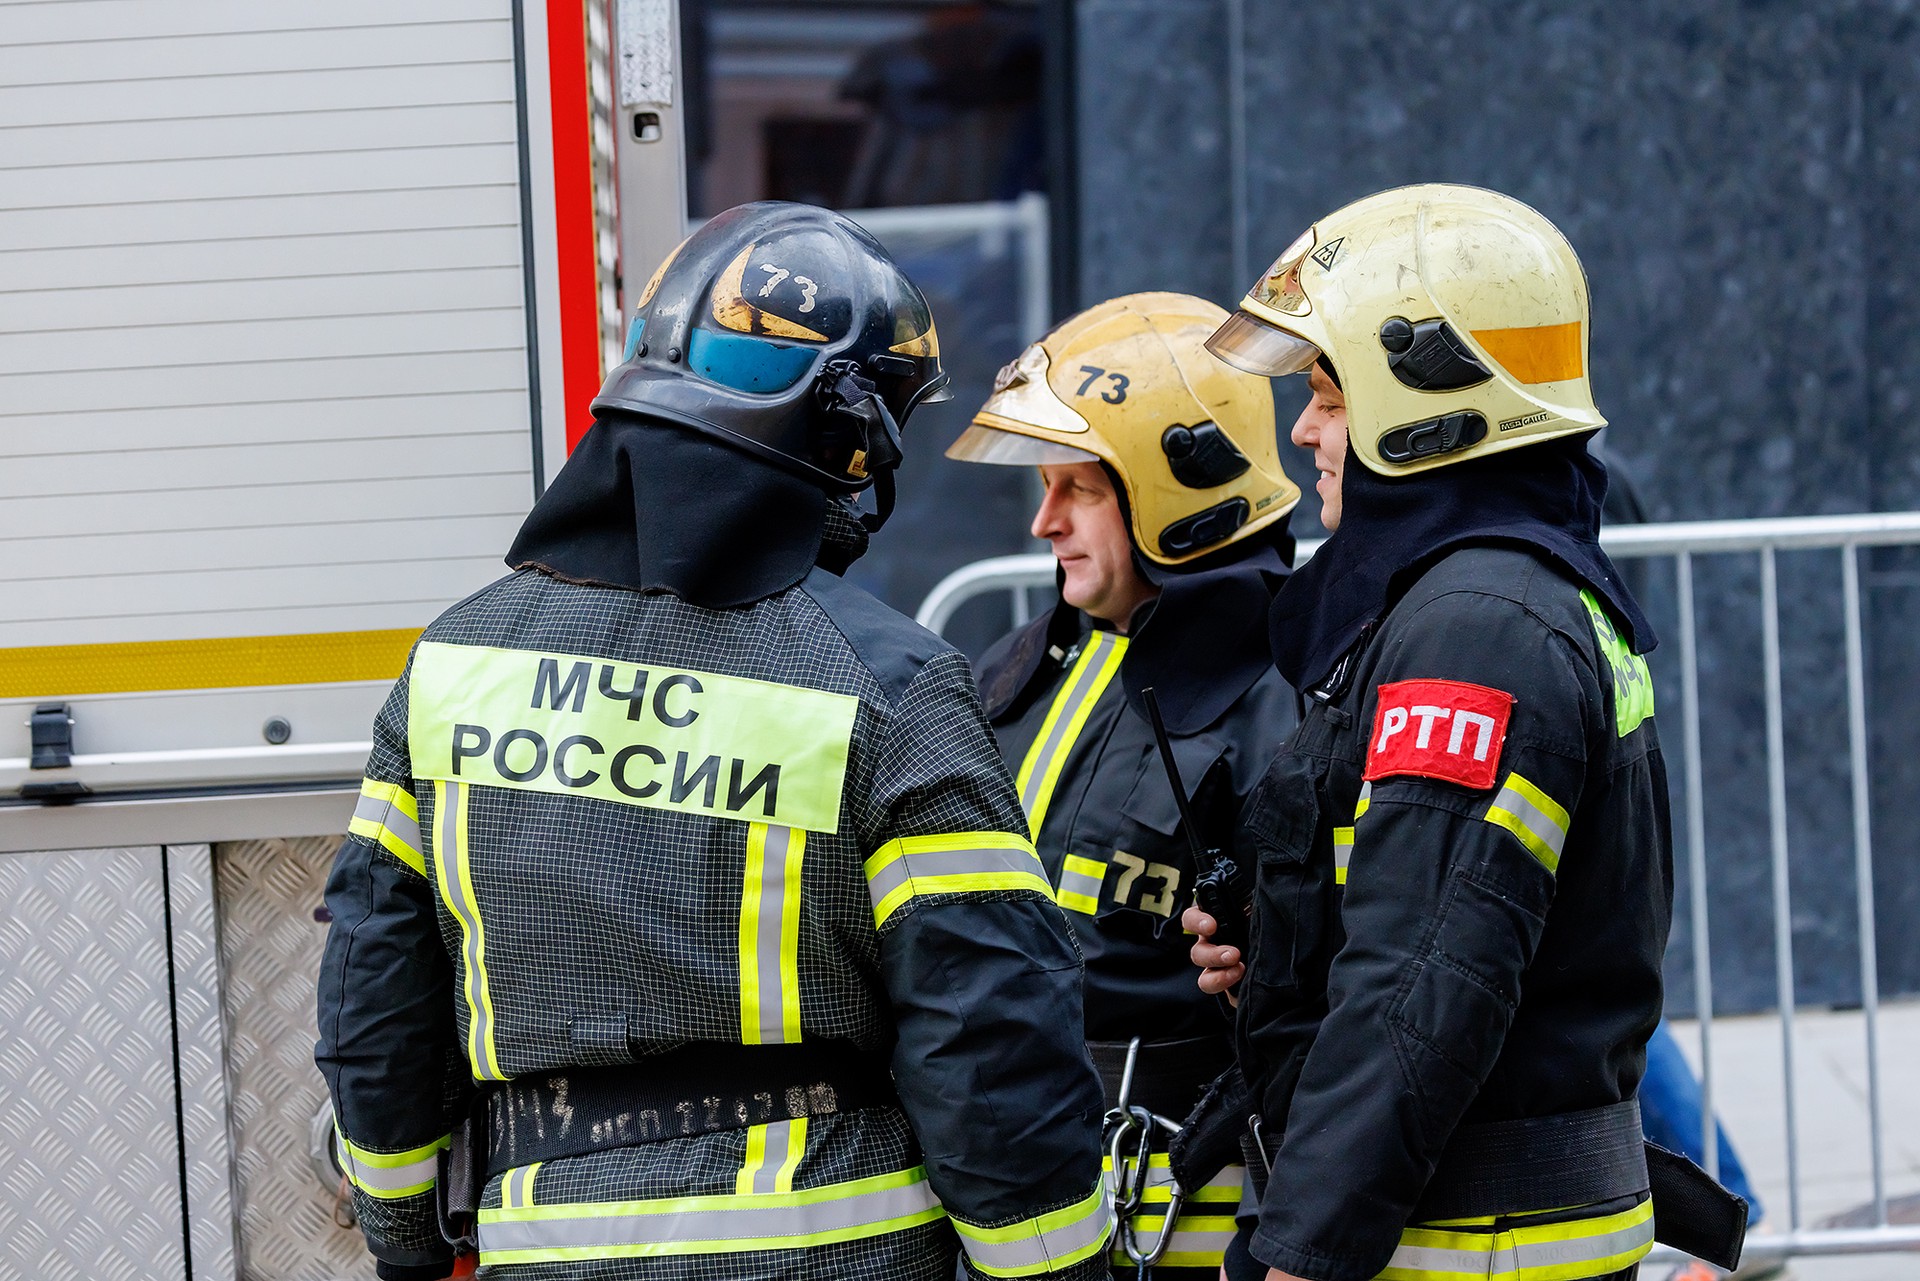 Гладков: На инфраструктурном объекте в Губкинском округе начался пожар после взрыва